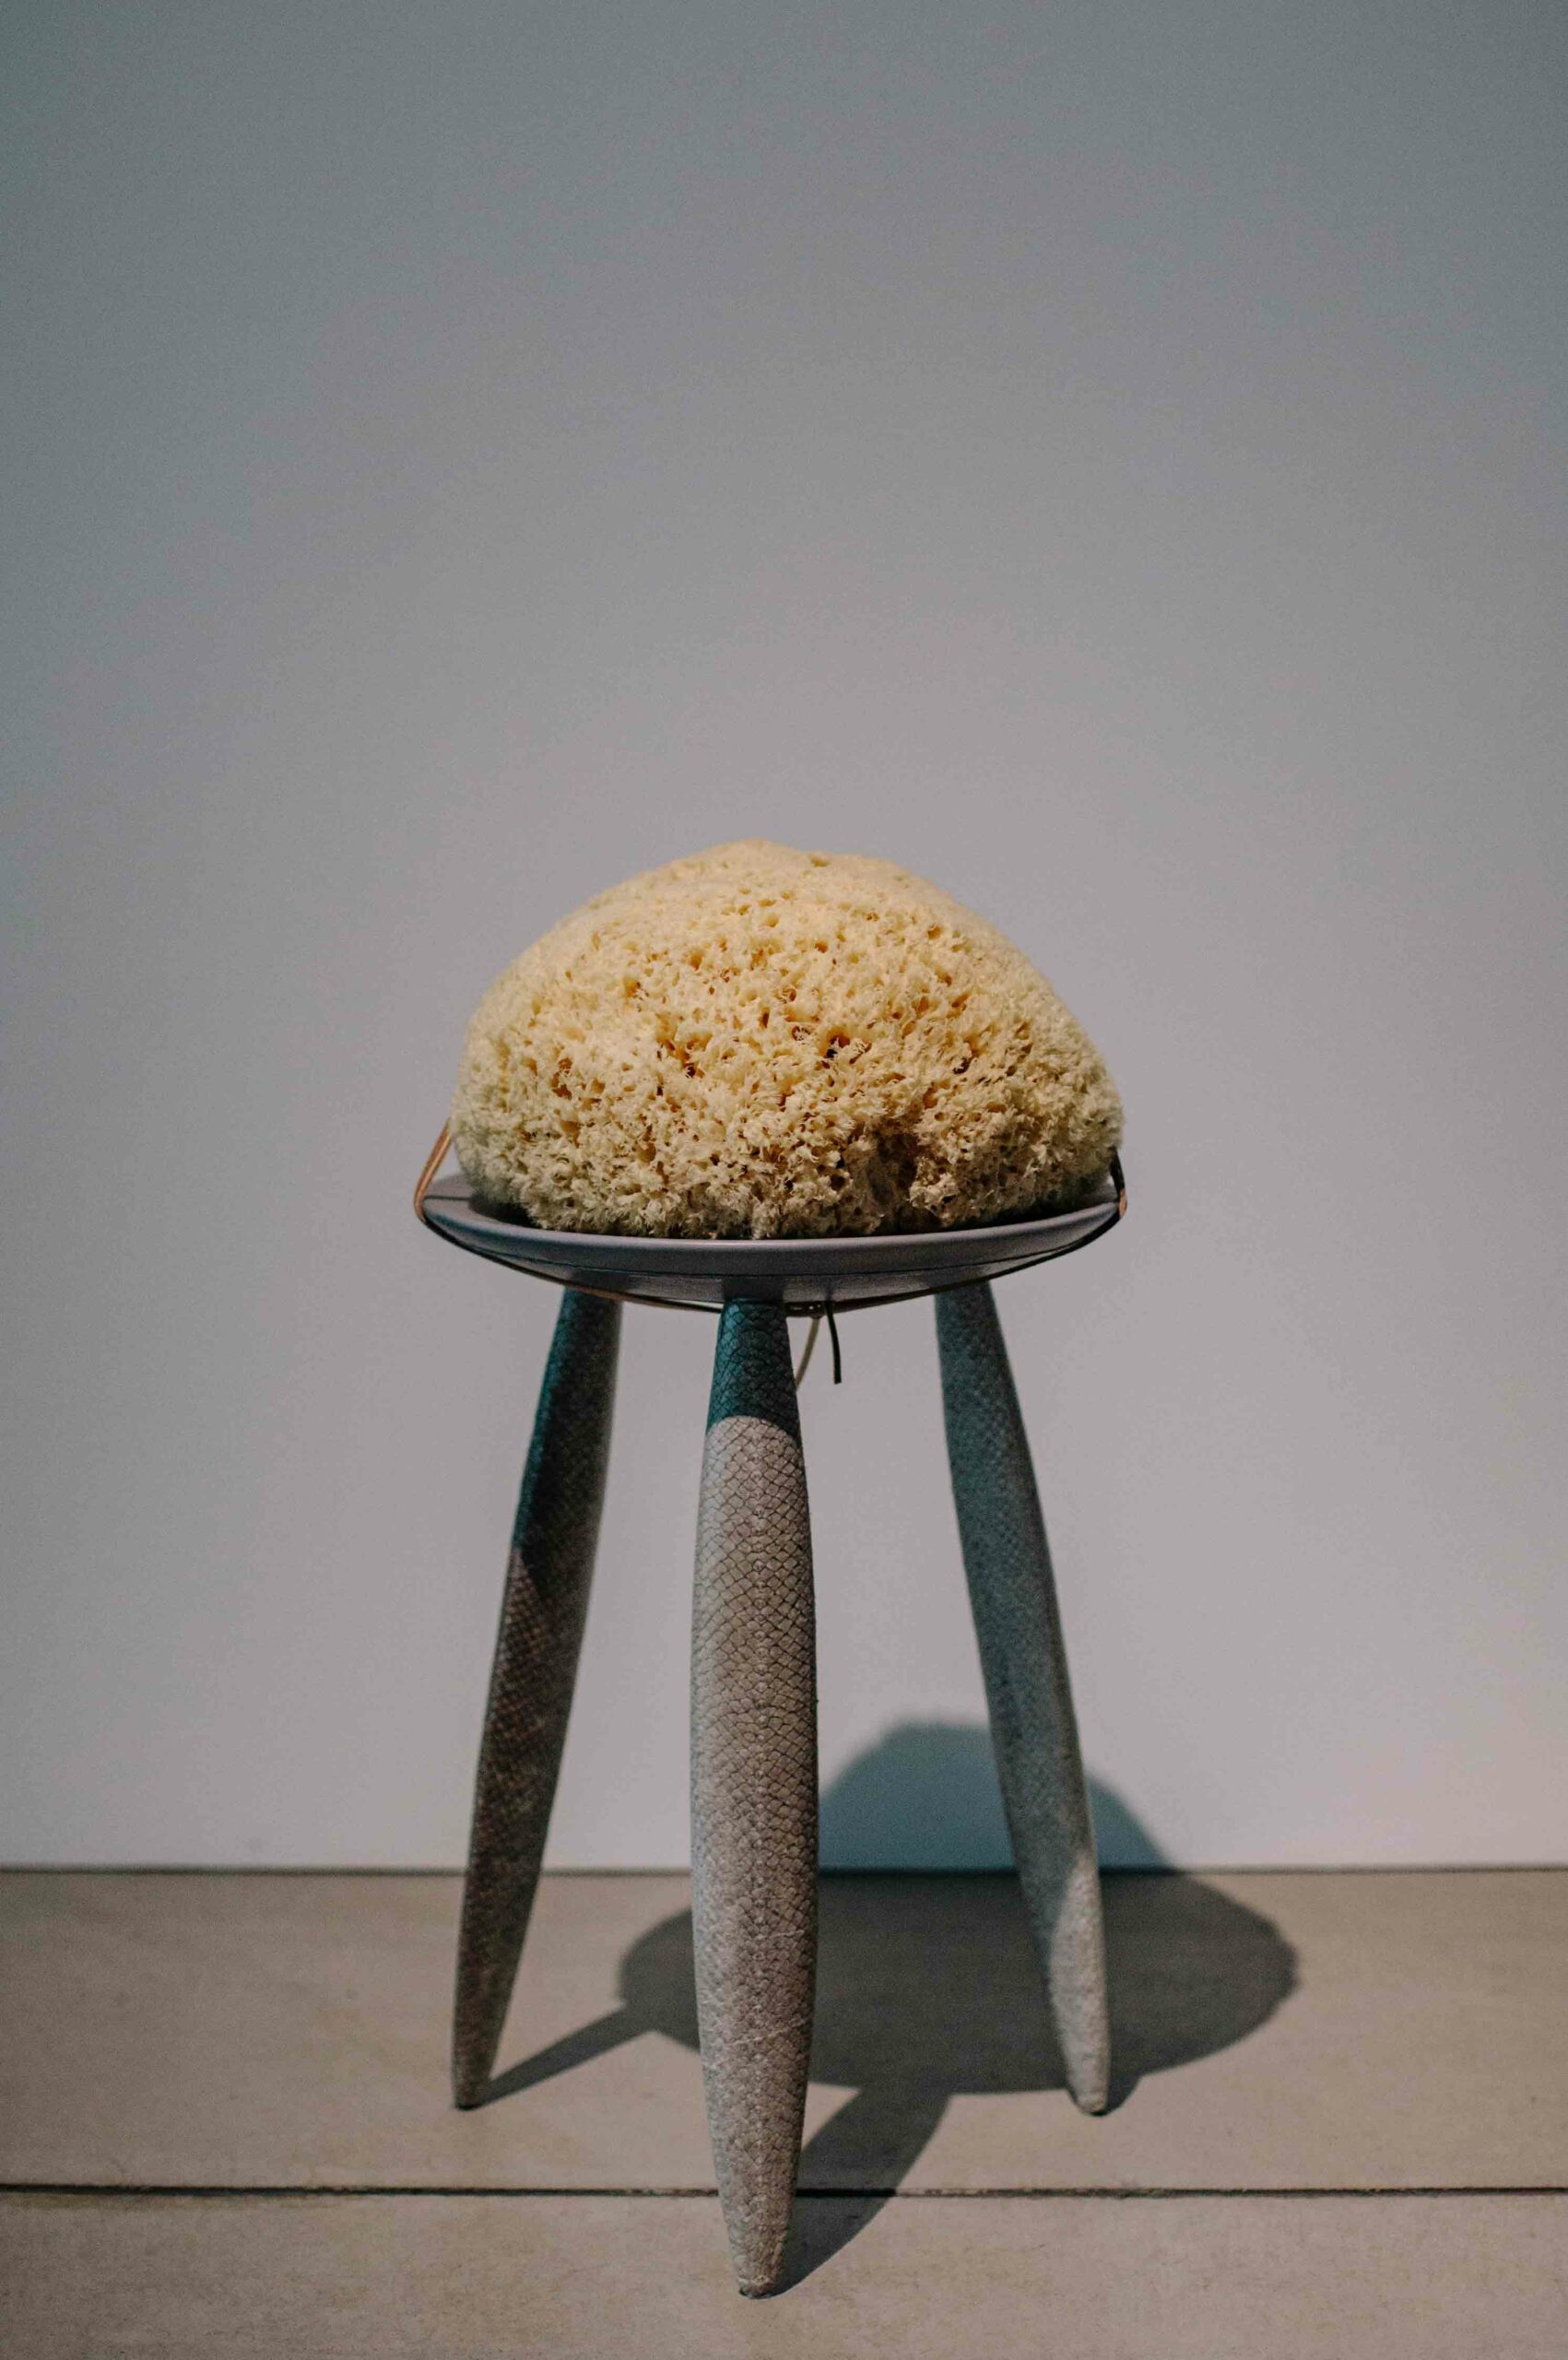 A sea sponge displayed on a three legged stool.